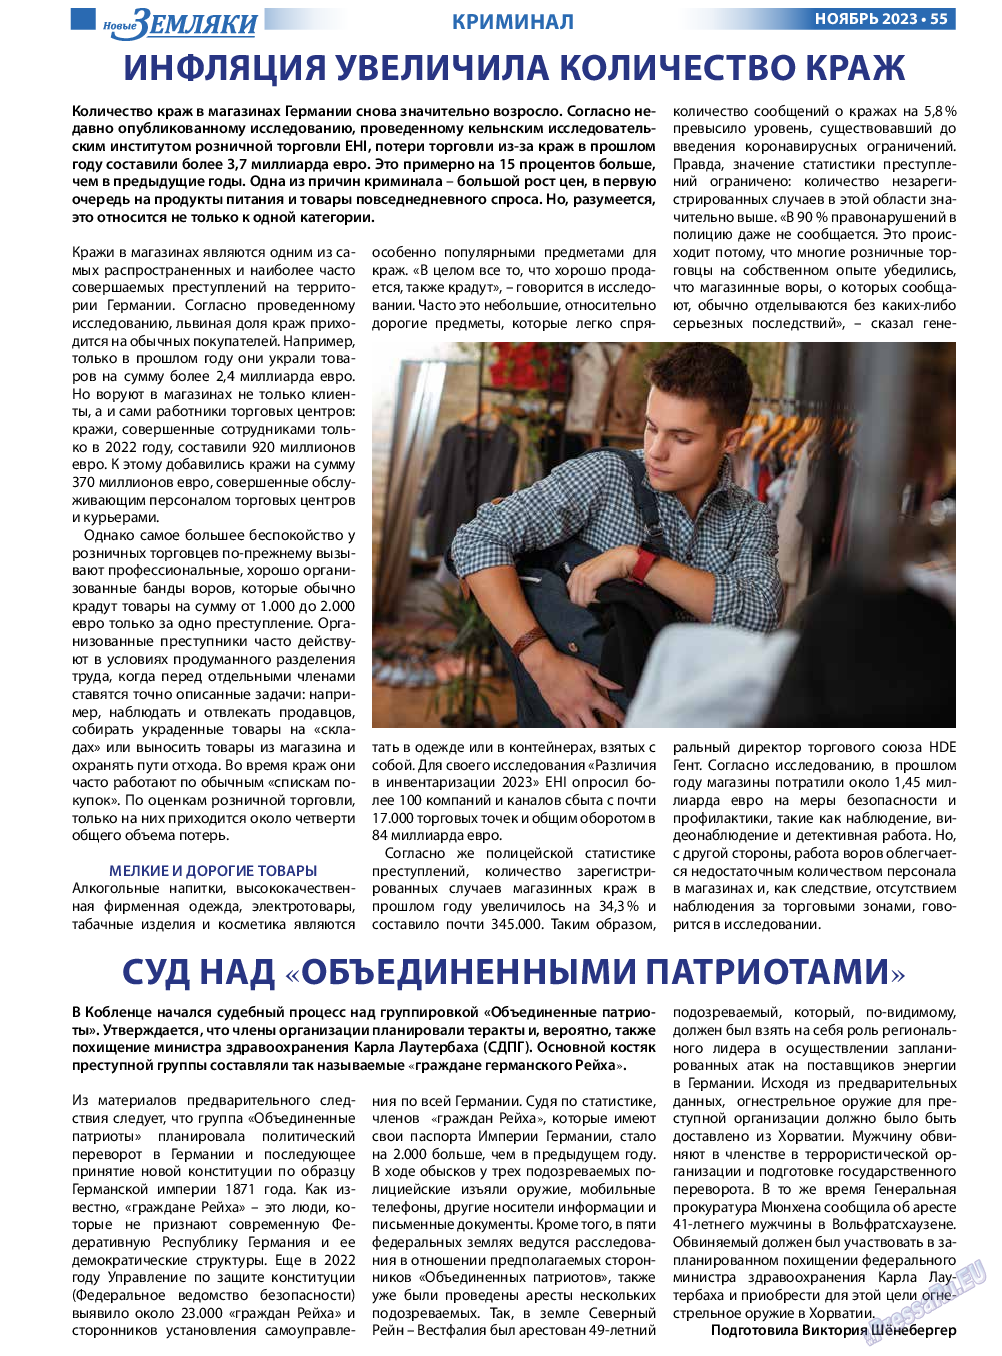 Новые Земляки, газета. 2023 №11 стр.55